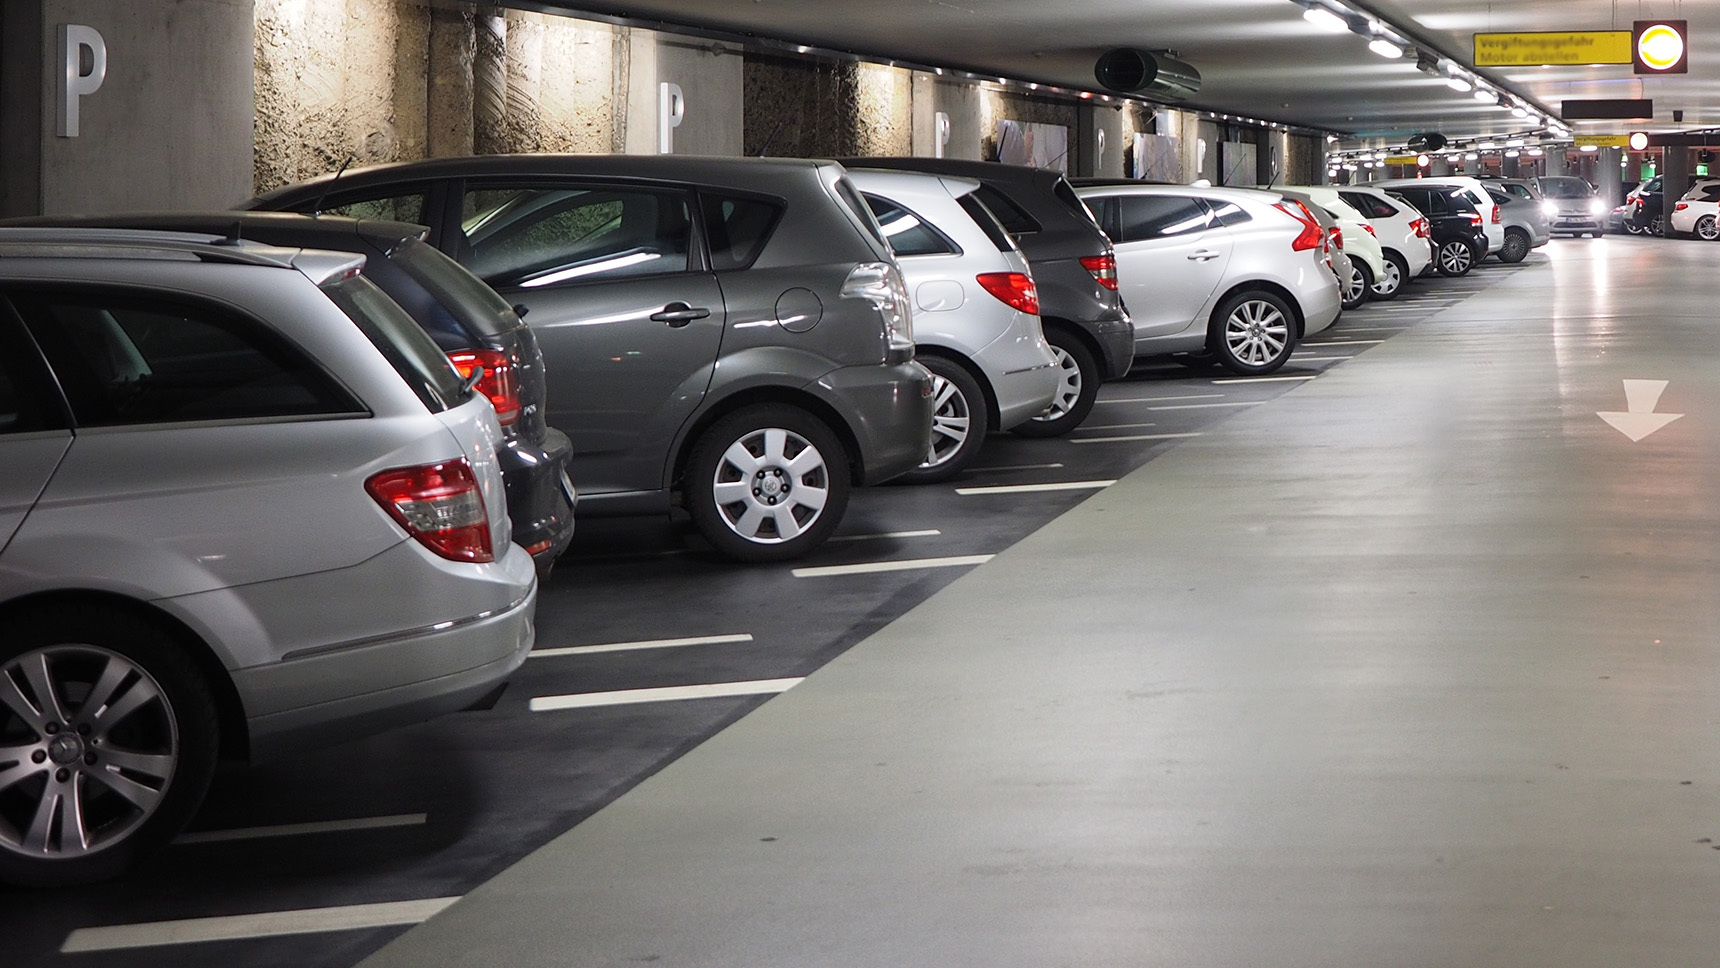 Как все же правильно парковаться: передом или задом